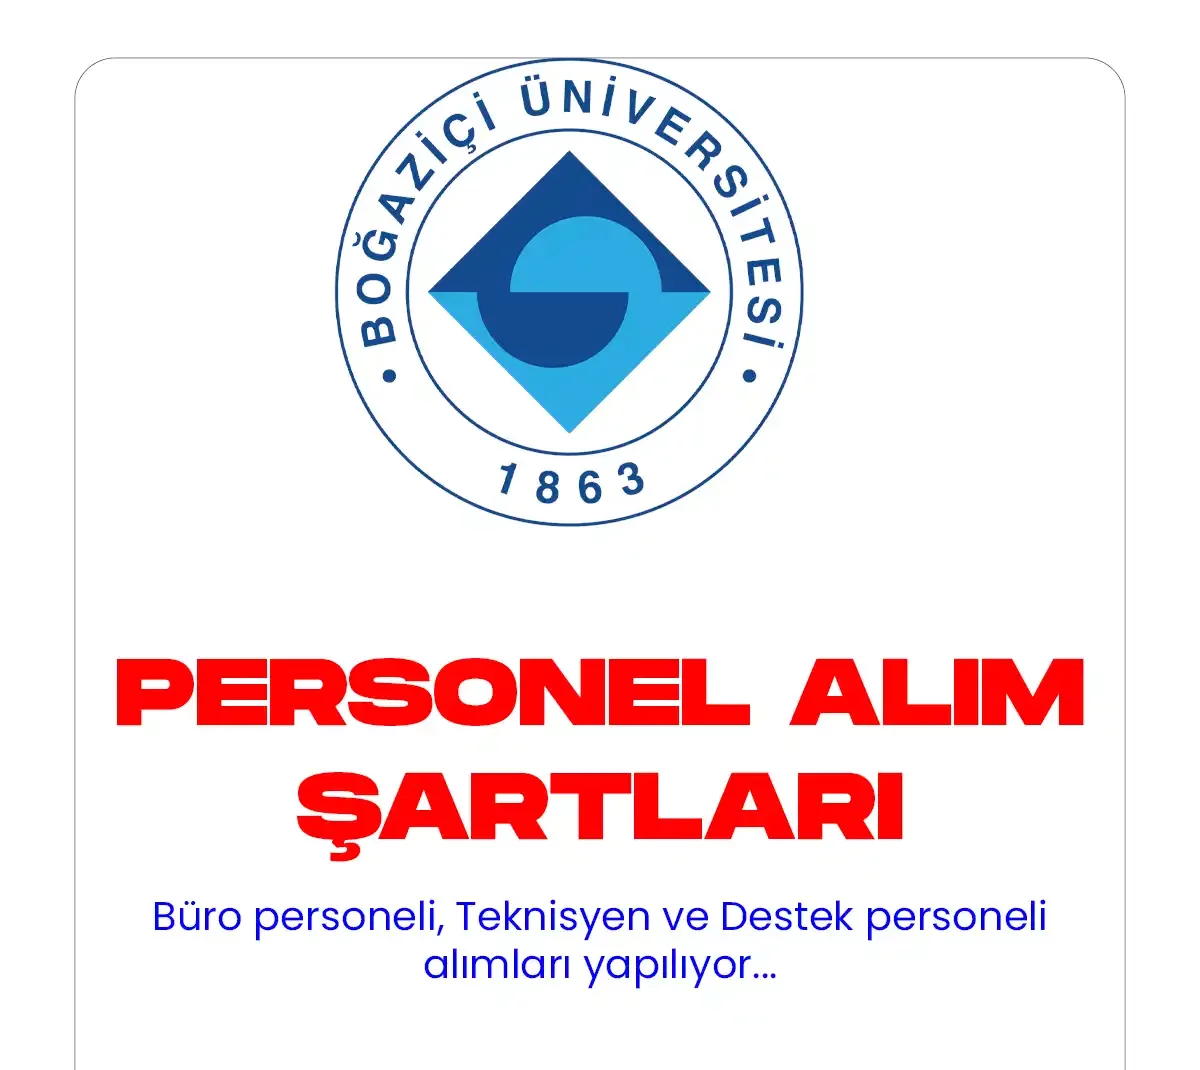 Boğaziçi Üniversitesi 40 personel alımı başvuruları devam ediyor. İlgili alım 5 Aralık'ta Resmi Gazete'de yayımlanmış ve 40 sözleşmeli personel alımı yapılacağına yer verilmişti.